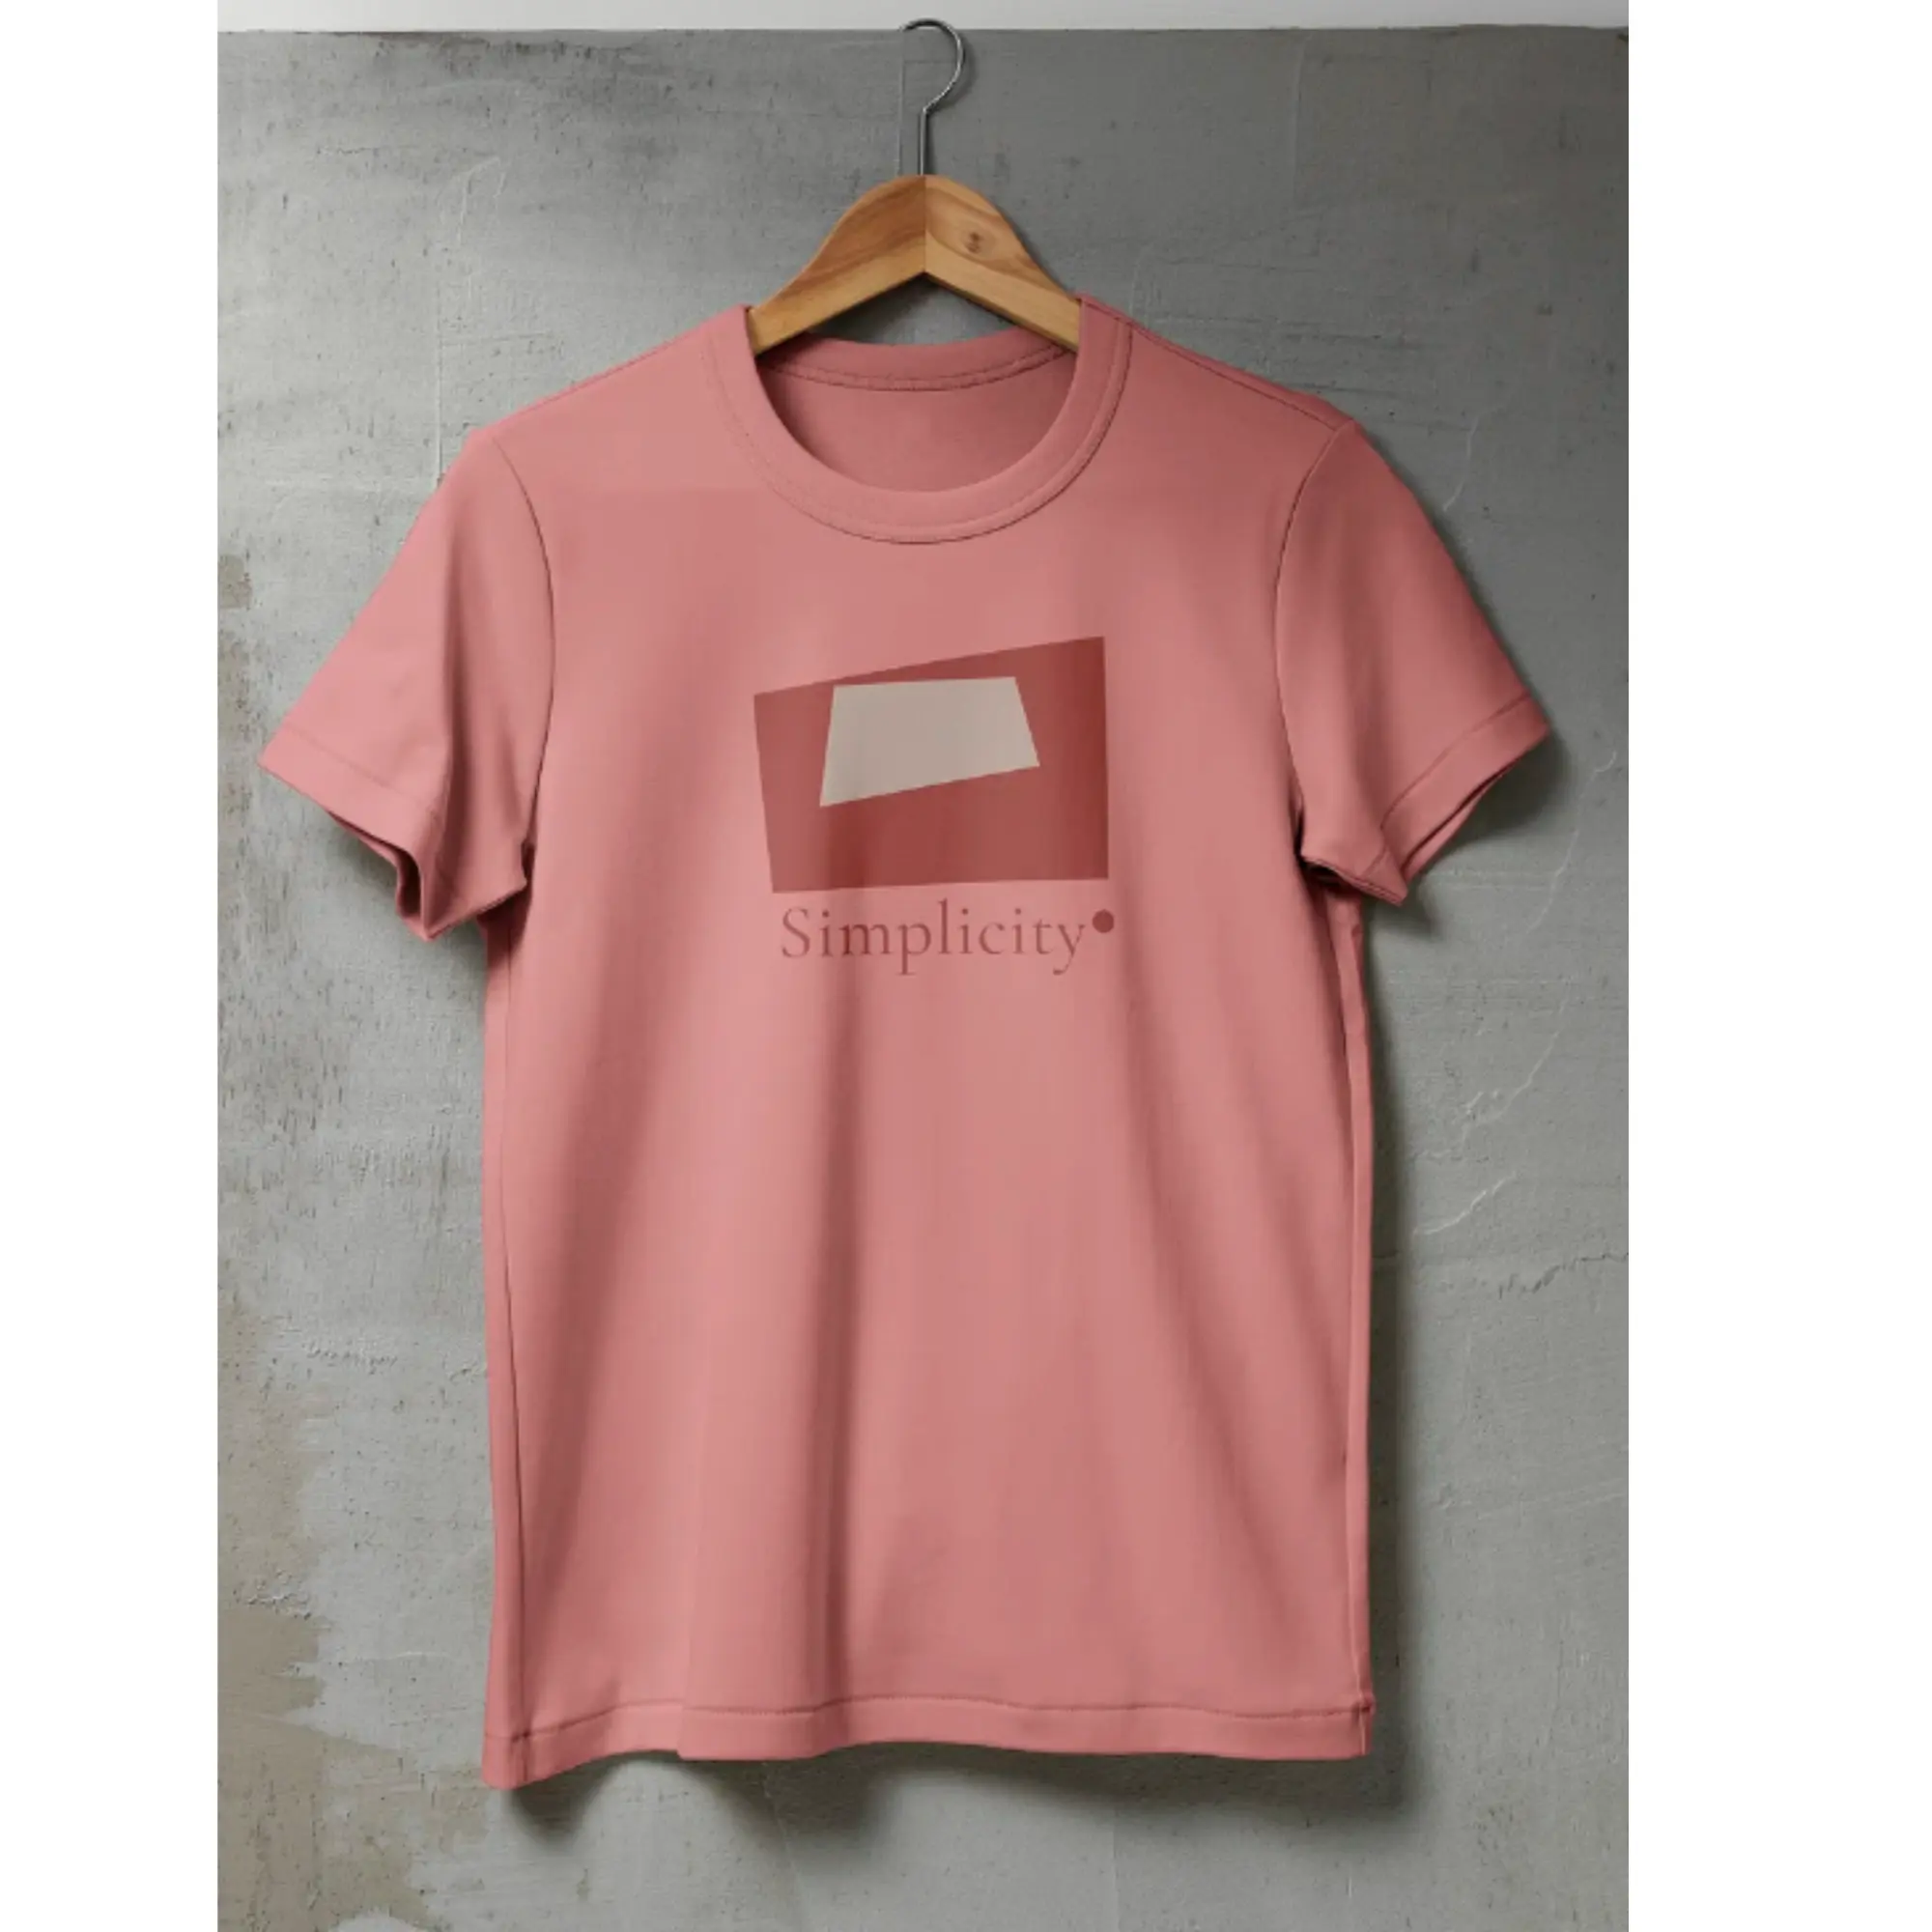 Camiseta personalizada de grado superior para mujer de la fábrica de Vietnam, ropa para hombre de alta calidad, camiseta con logotipo bordado o estampado